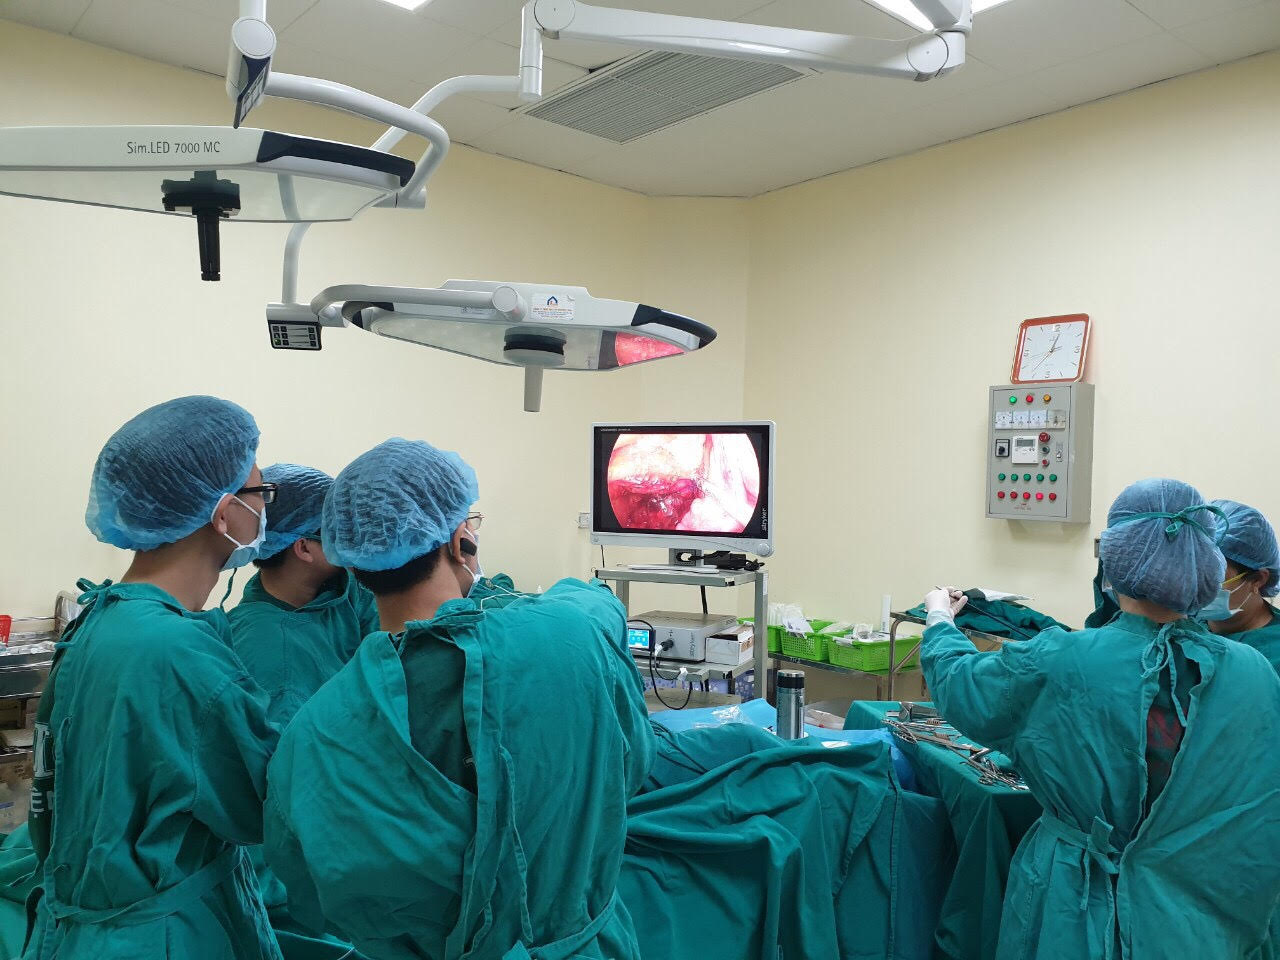 Ca phẫu thuật cắt u thực quản kích thước lớn cho bệnh nhân nam 66 tuổi bị ung thư hắc tố thực quản hiếm gặp tại bệnh viện K. Ảnh: VGP/Trần Hà